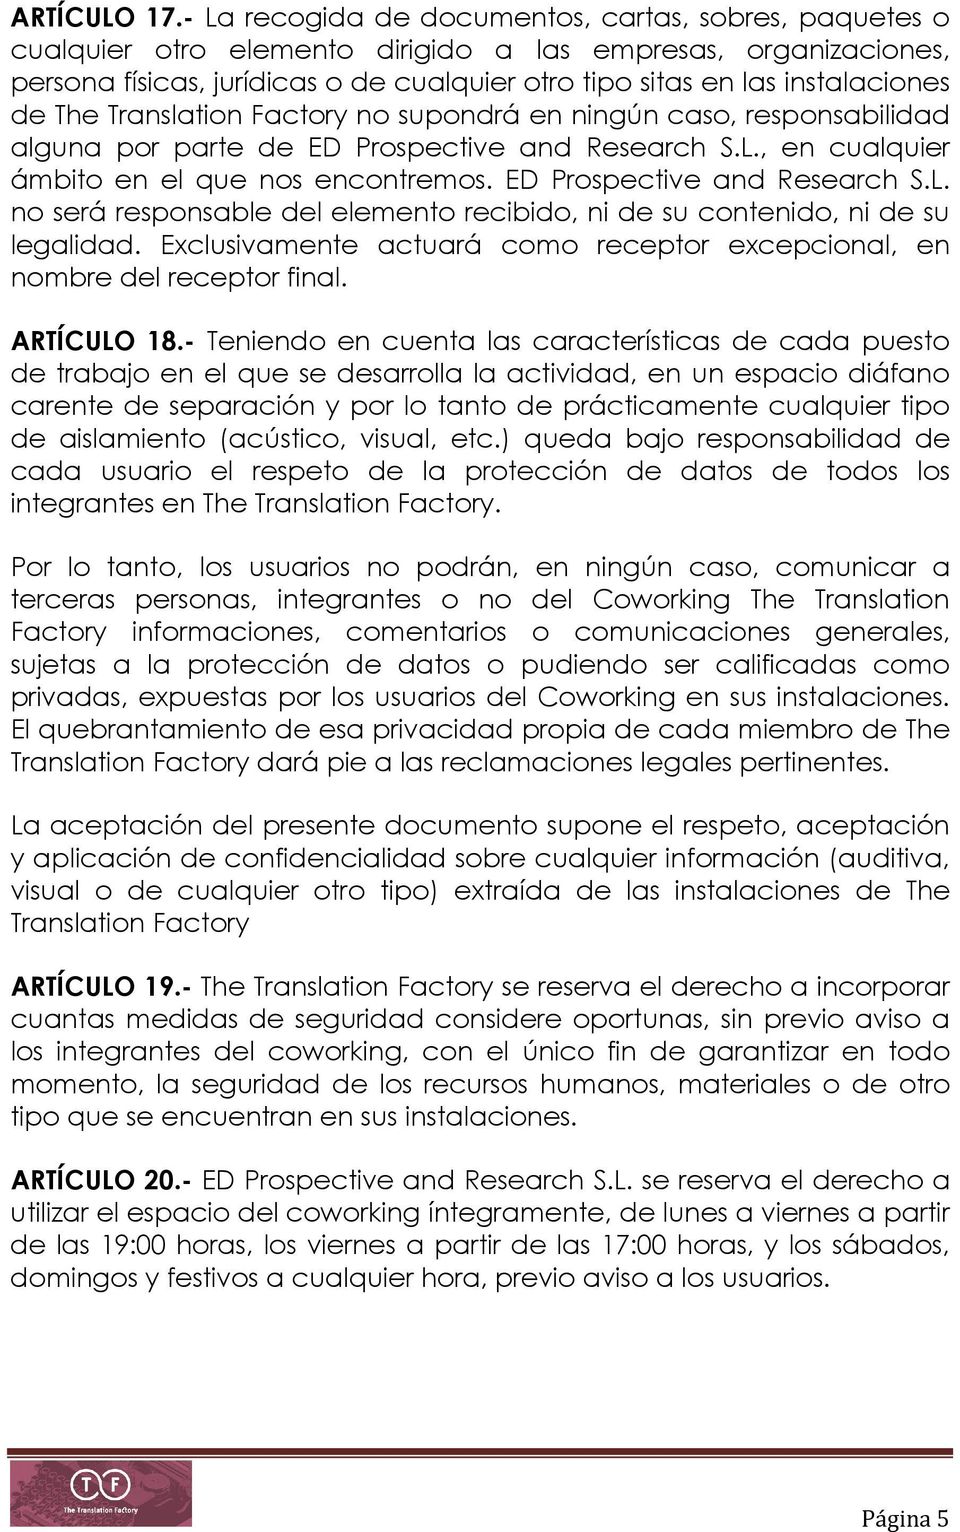 CONTRATO DE COWORKING THE TRANSLATION FACTORY. Prestación de servicios de  coworking - PDF Free Download